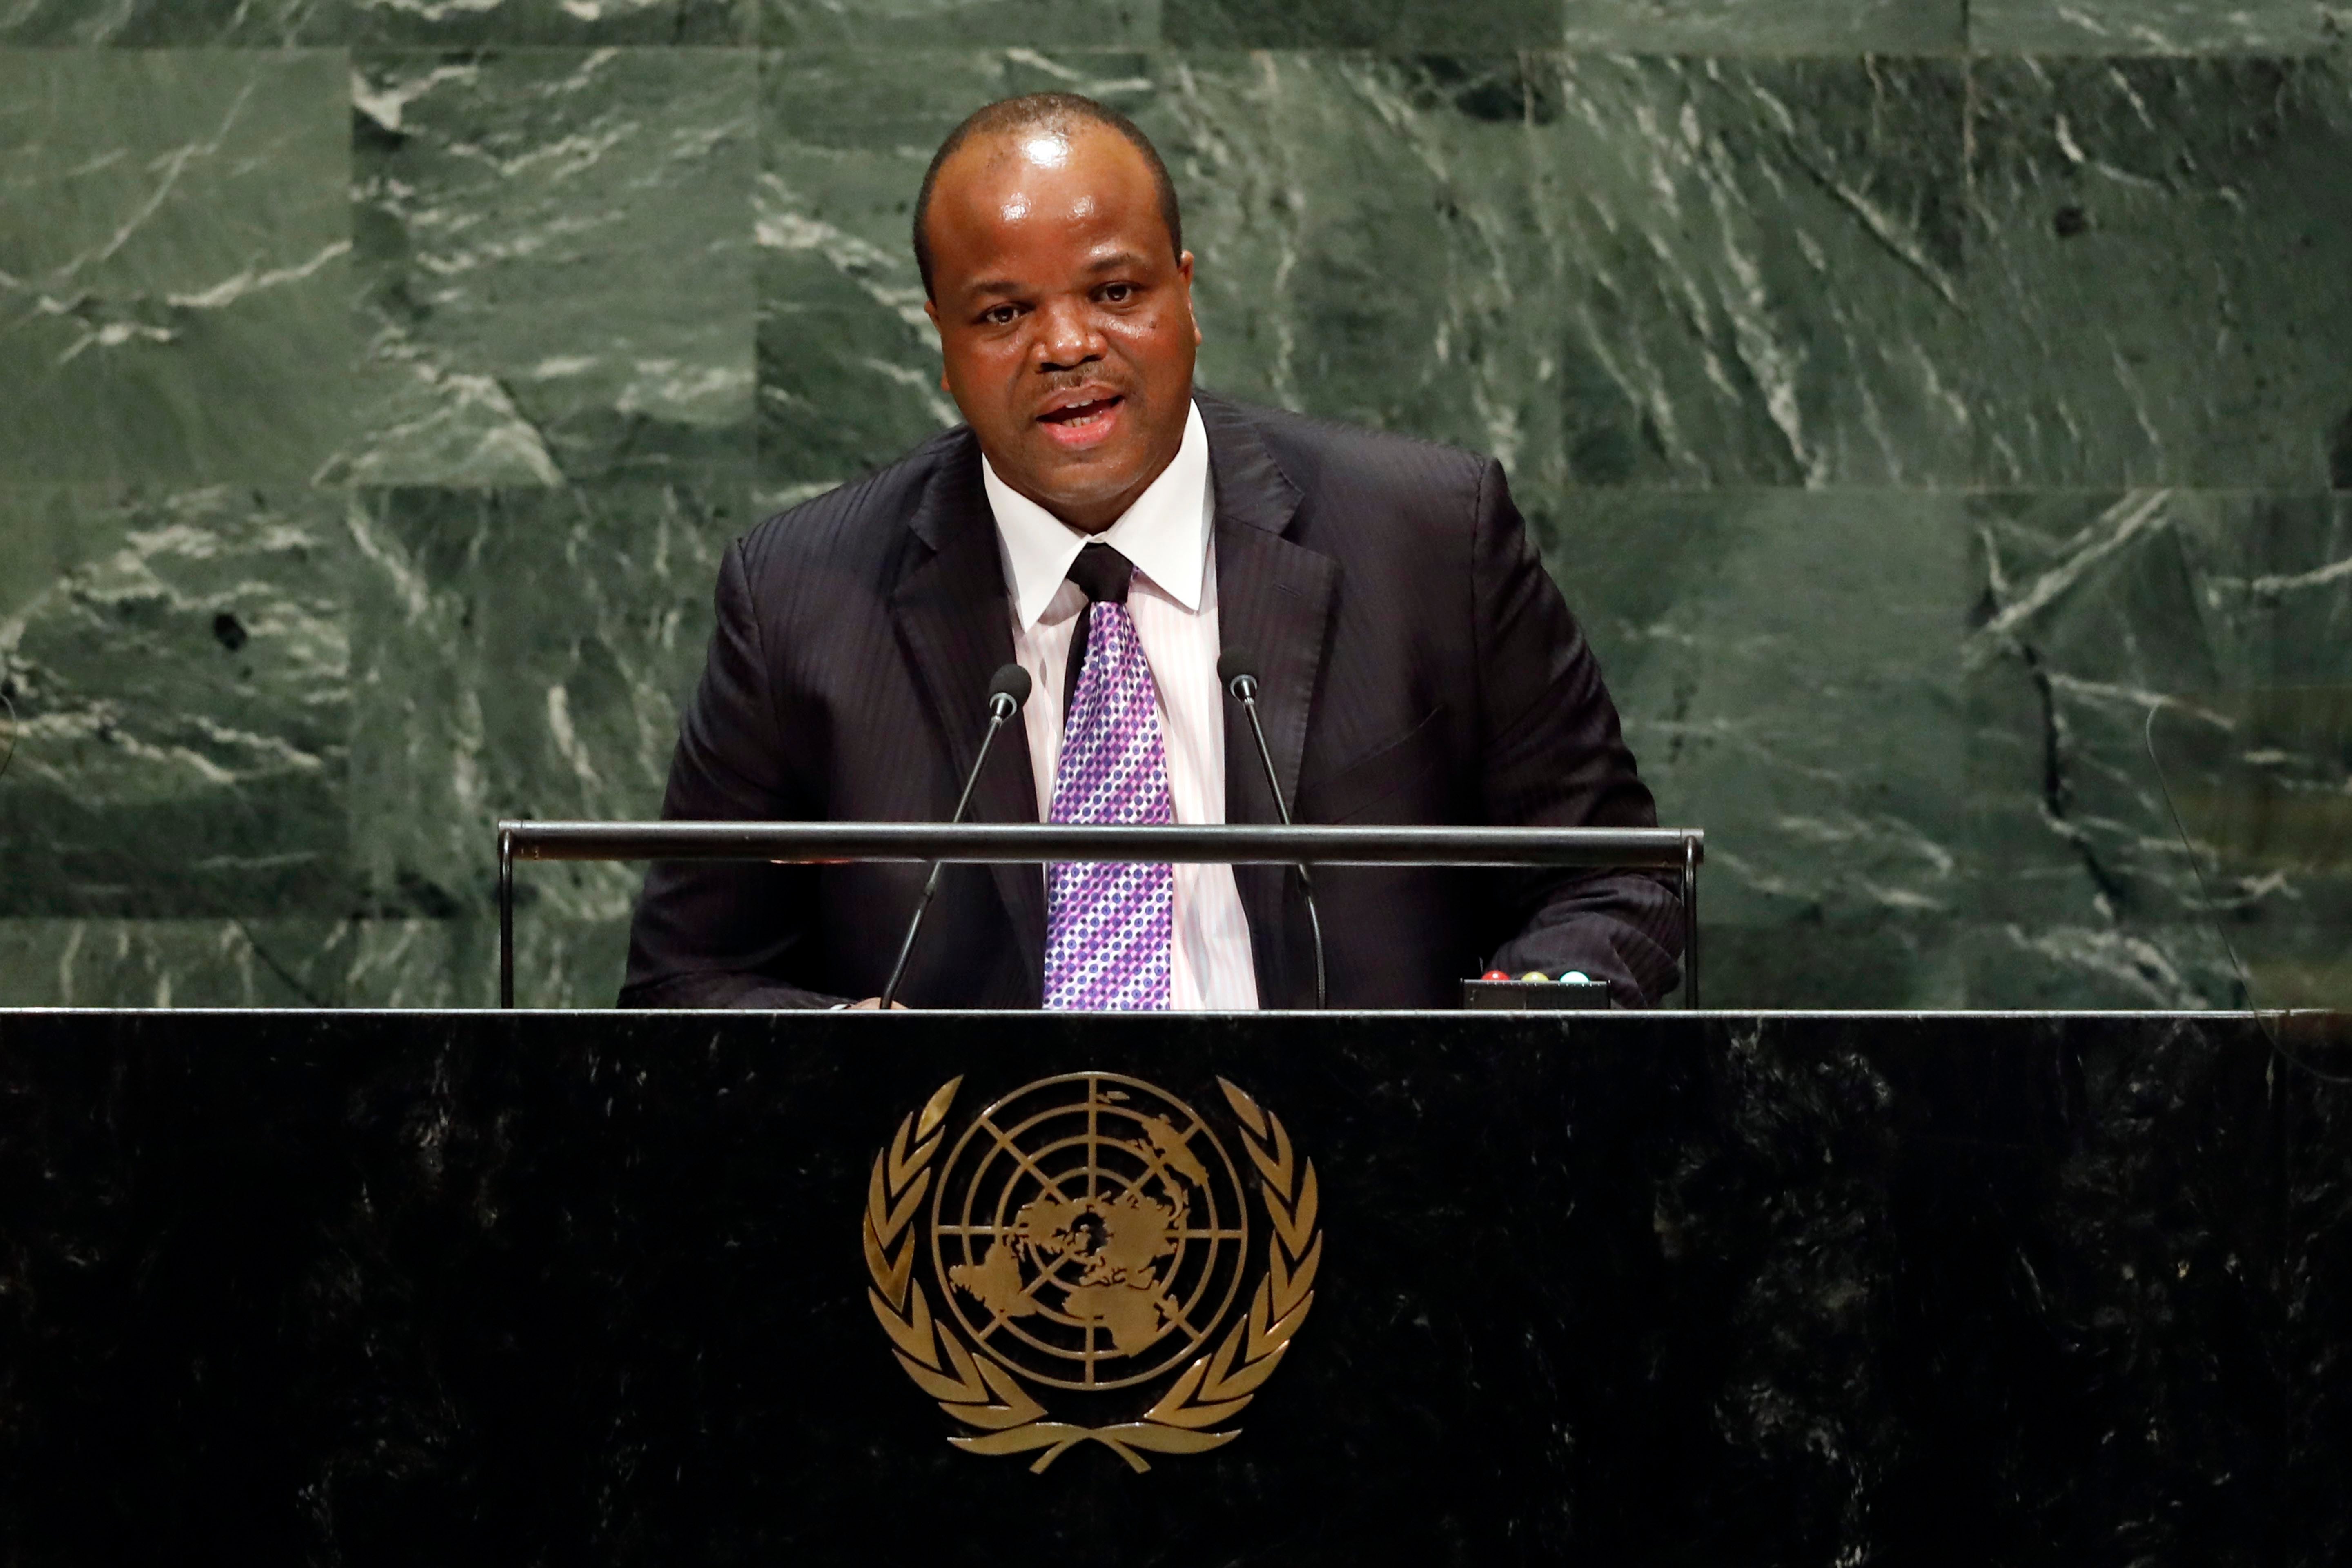 Le roi Mswati III d'Eswatini (pays précédemment connu sous le nom de Swaziland) prononçait un discours lors de la 74ème session de l'Assemblée générale des Nations Unies à New York, le 25 septembre 2019.